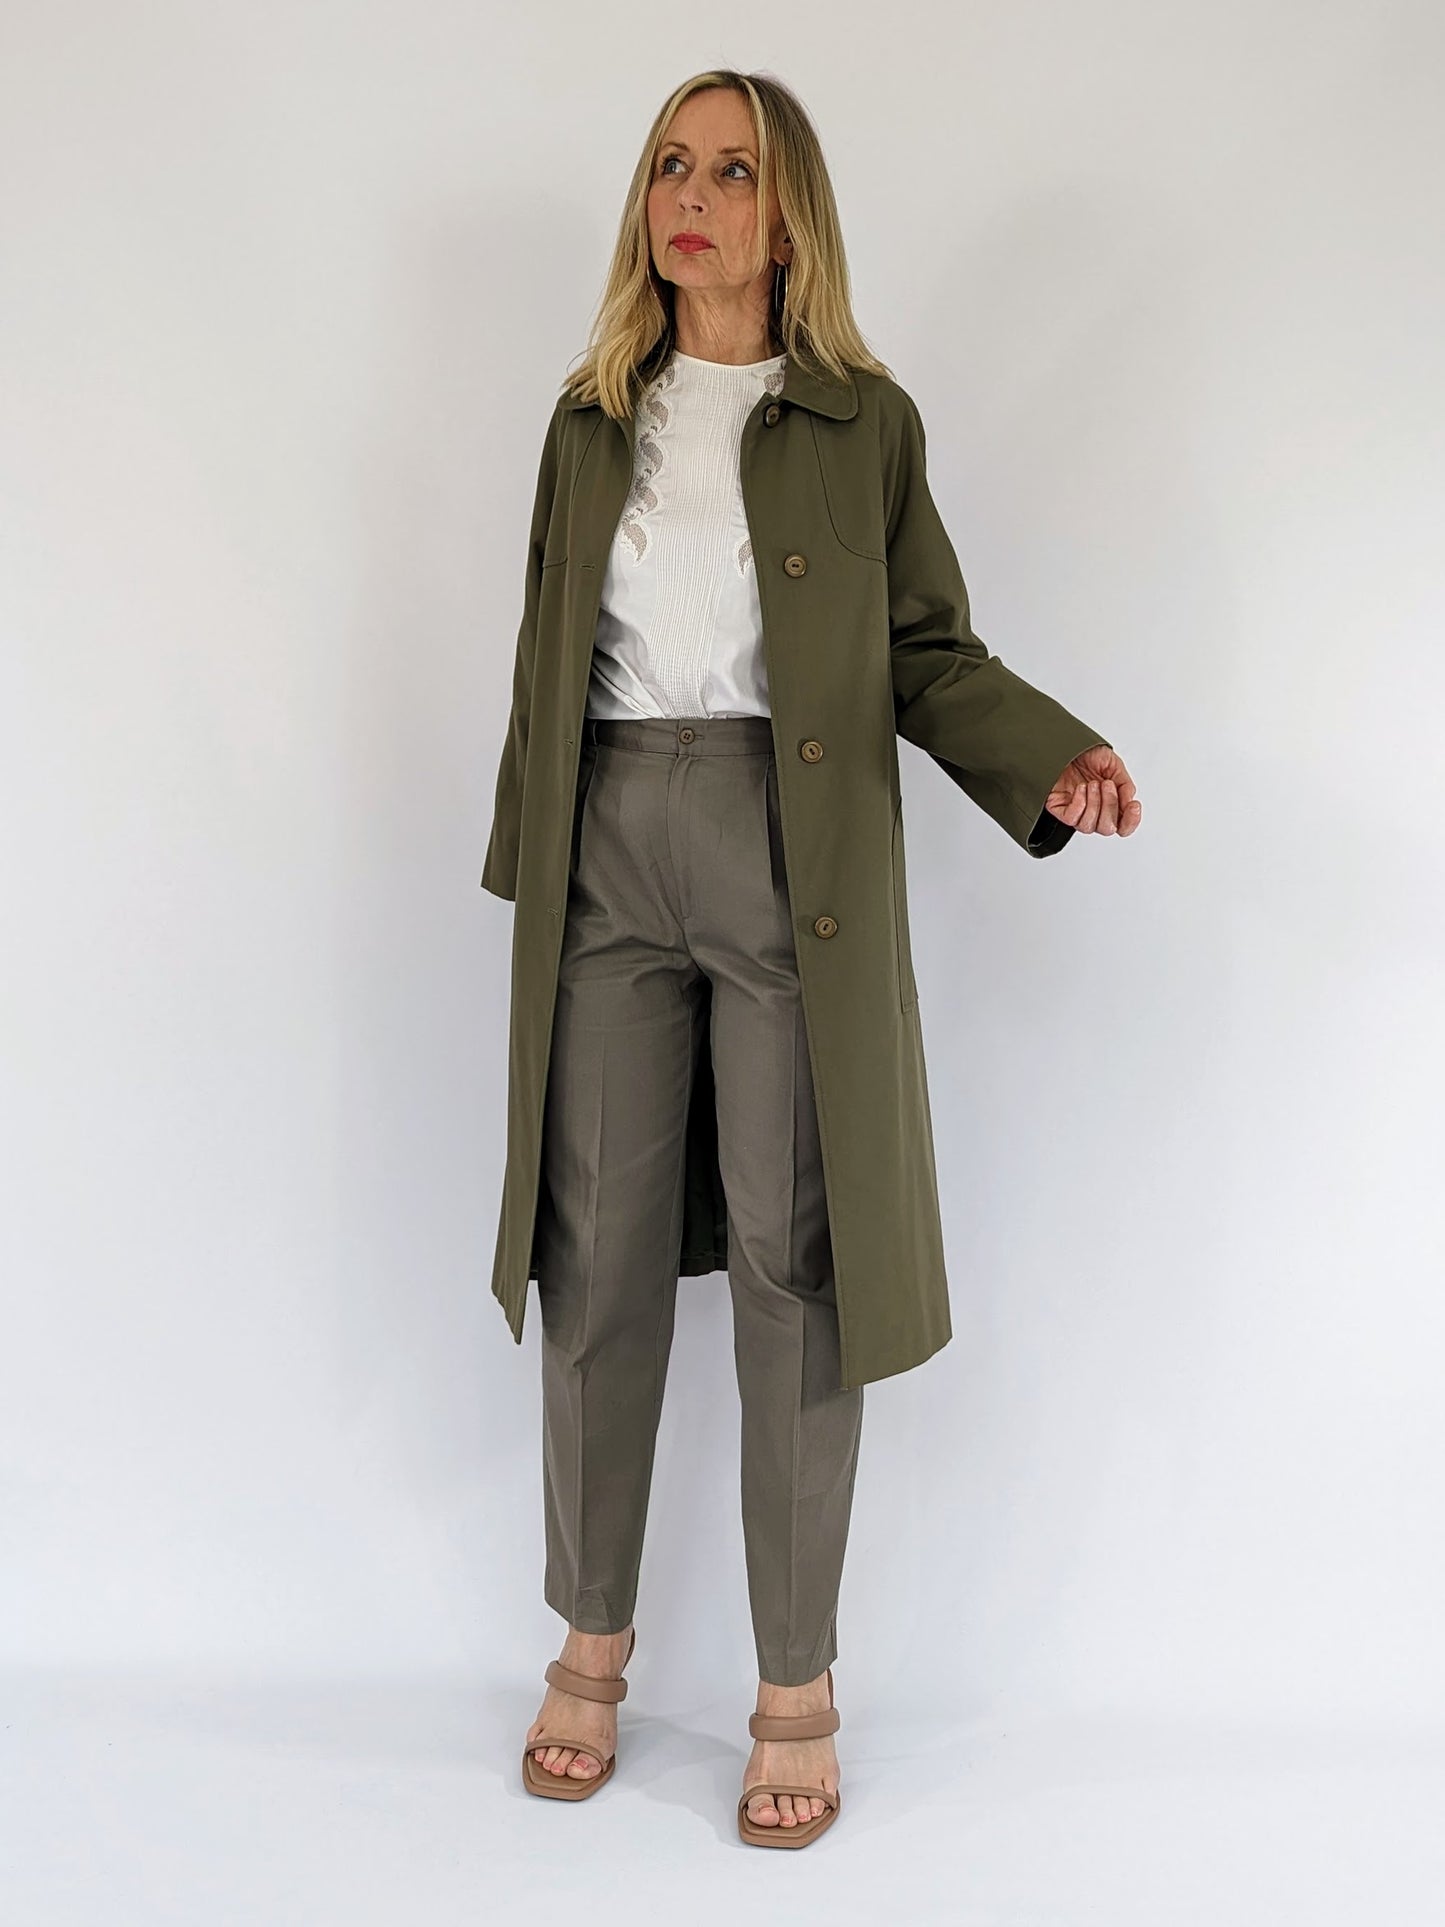 women's vintage trench coat